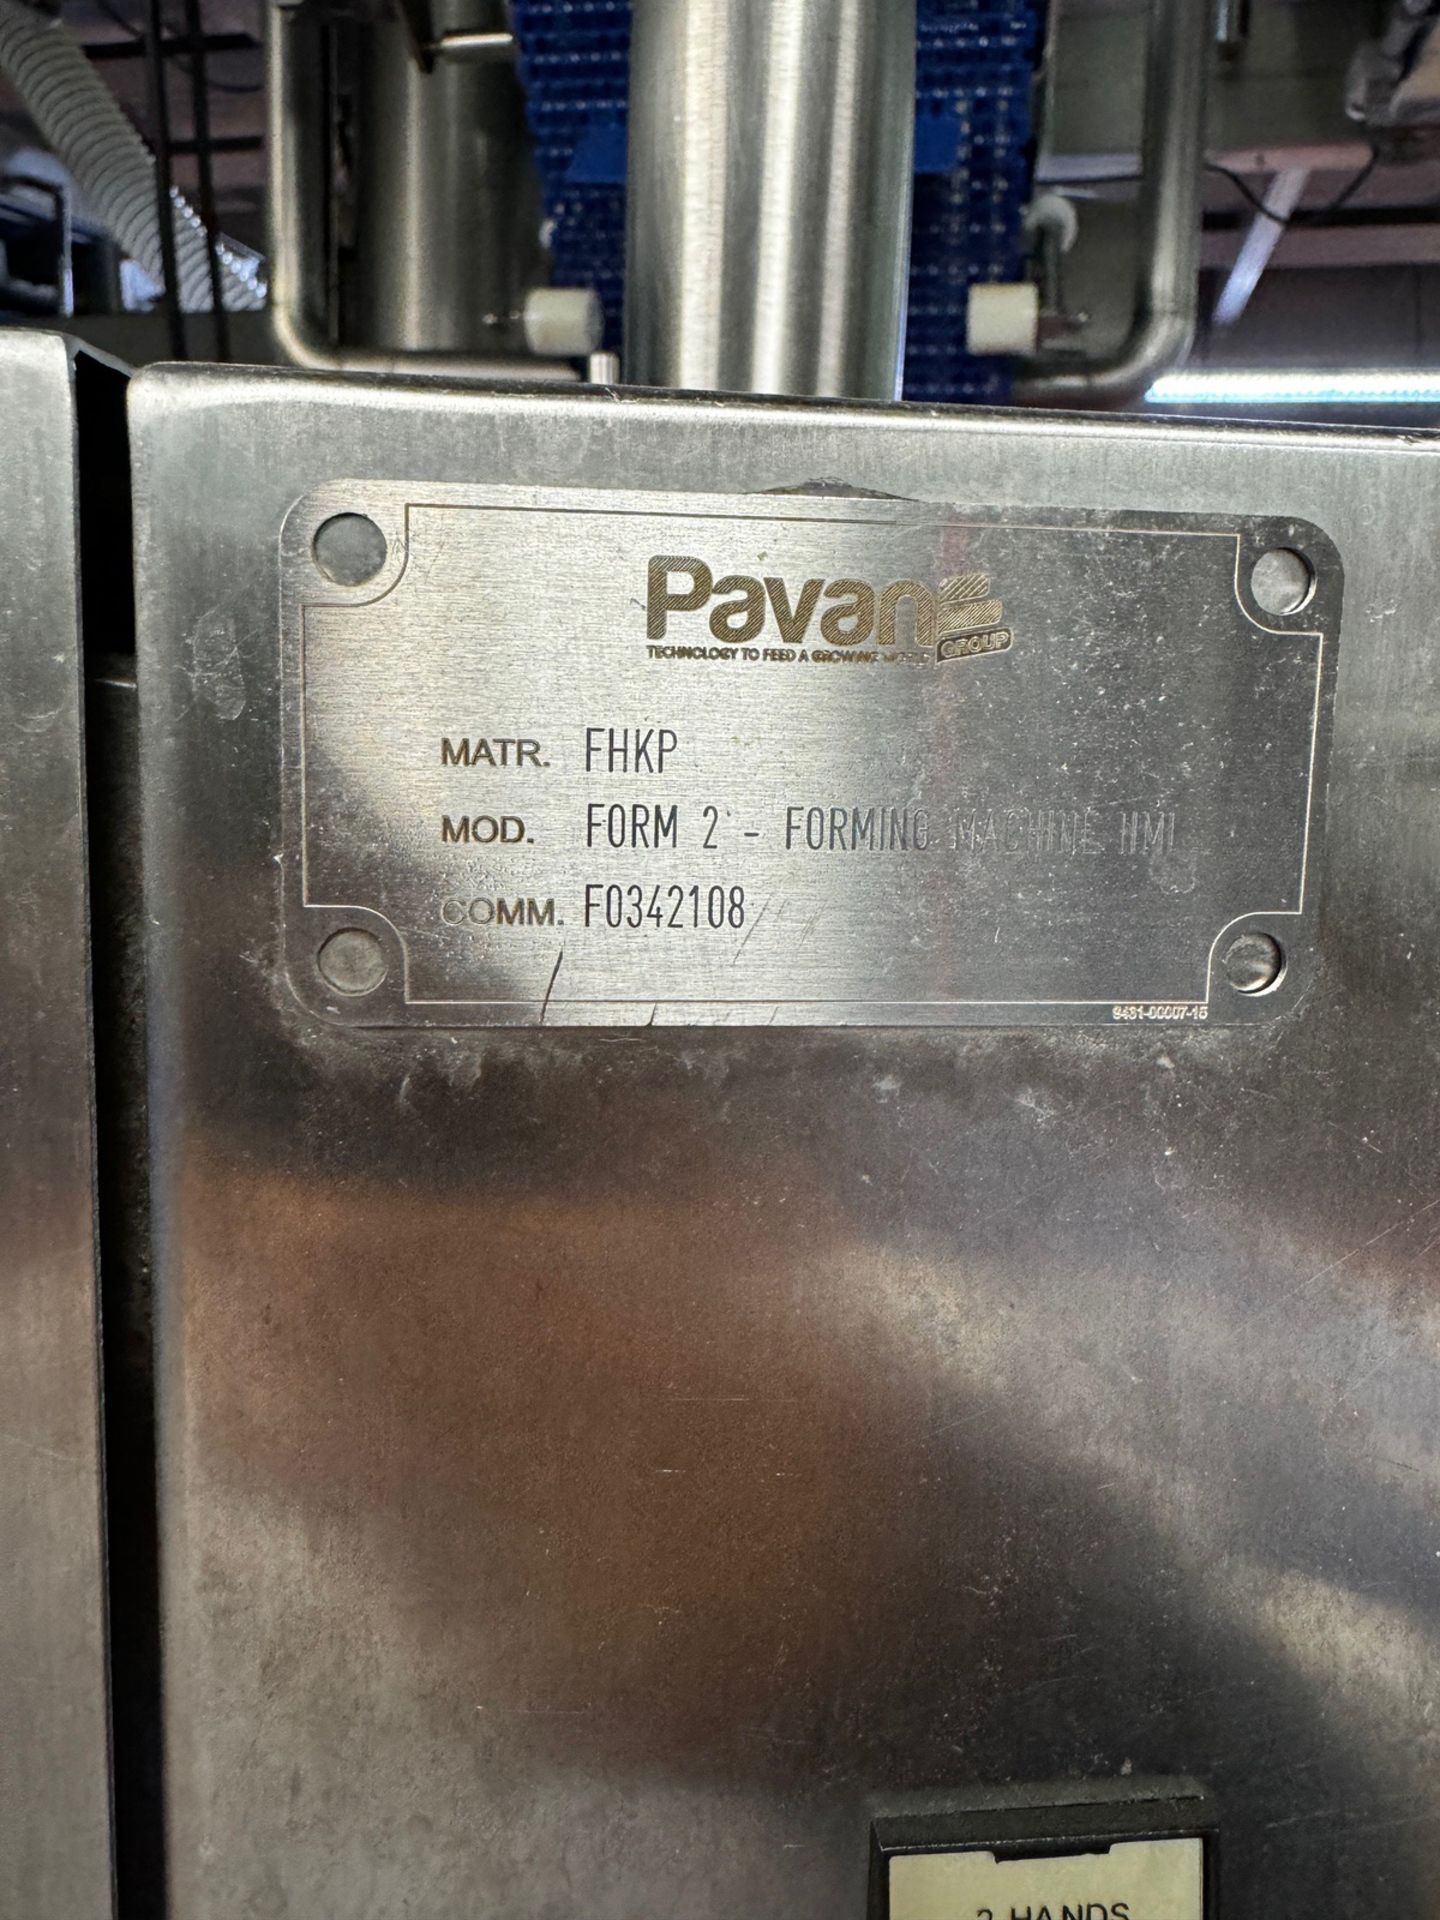 2012 Pavan Form 2 Forming Machine HMI, Tortellini Die, S/N F0342108 - Image 5 of 5